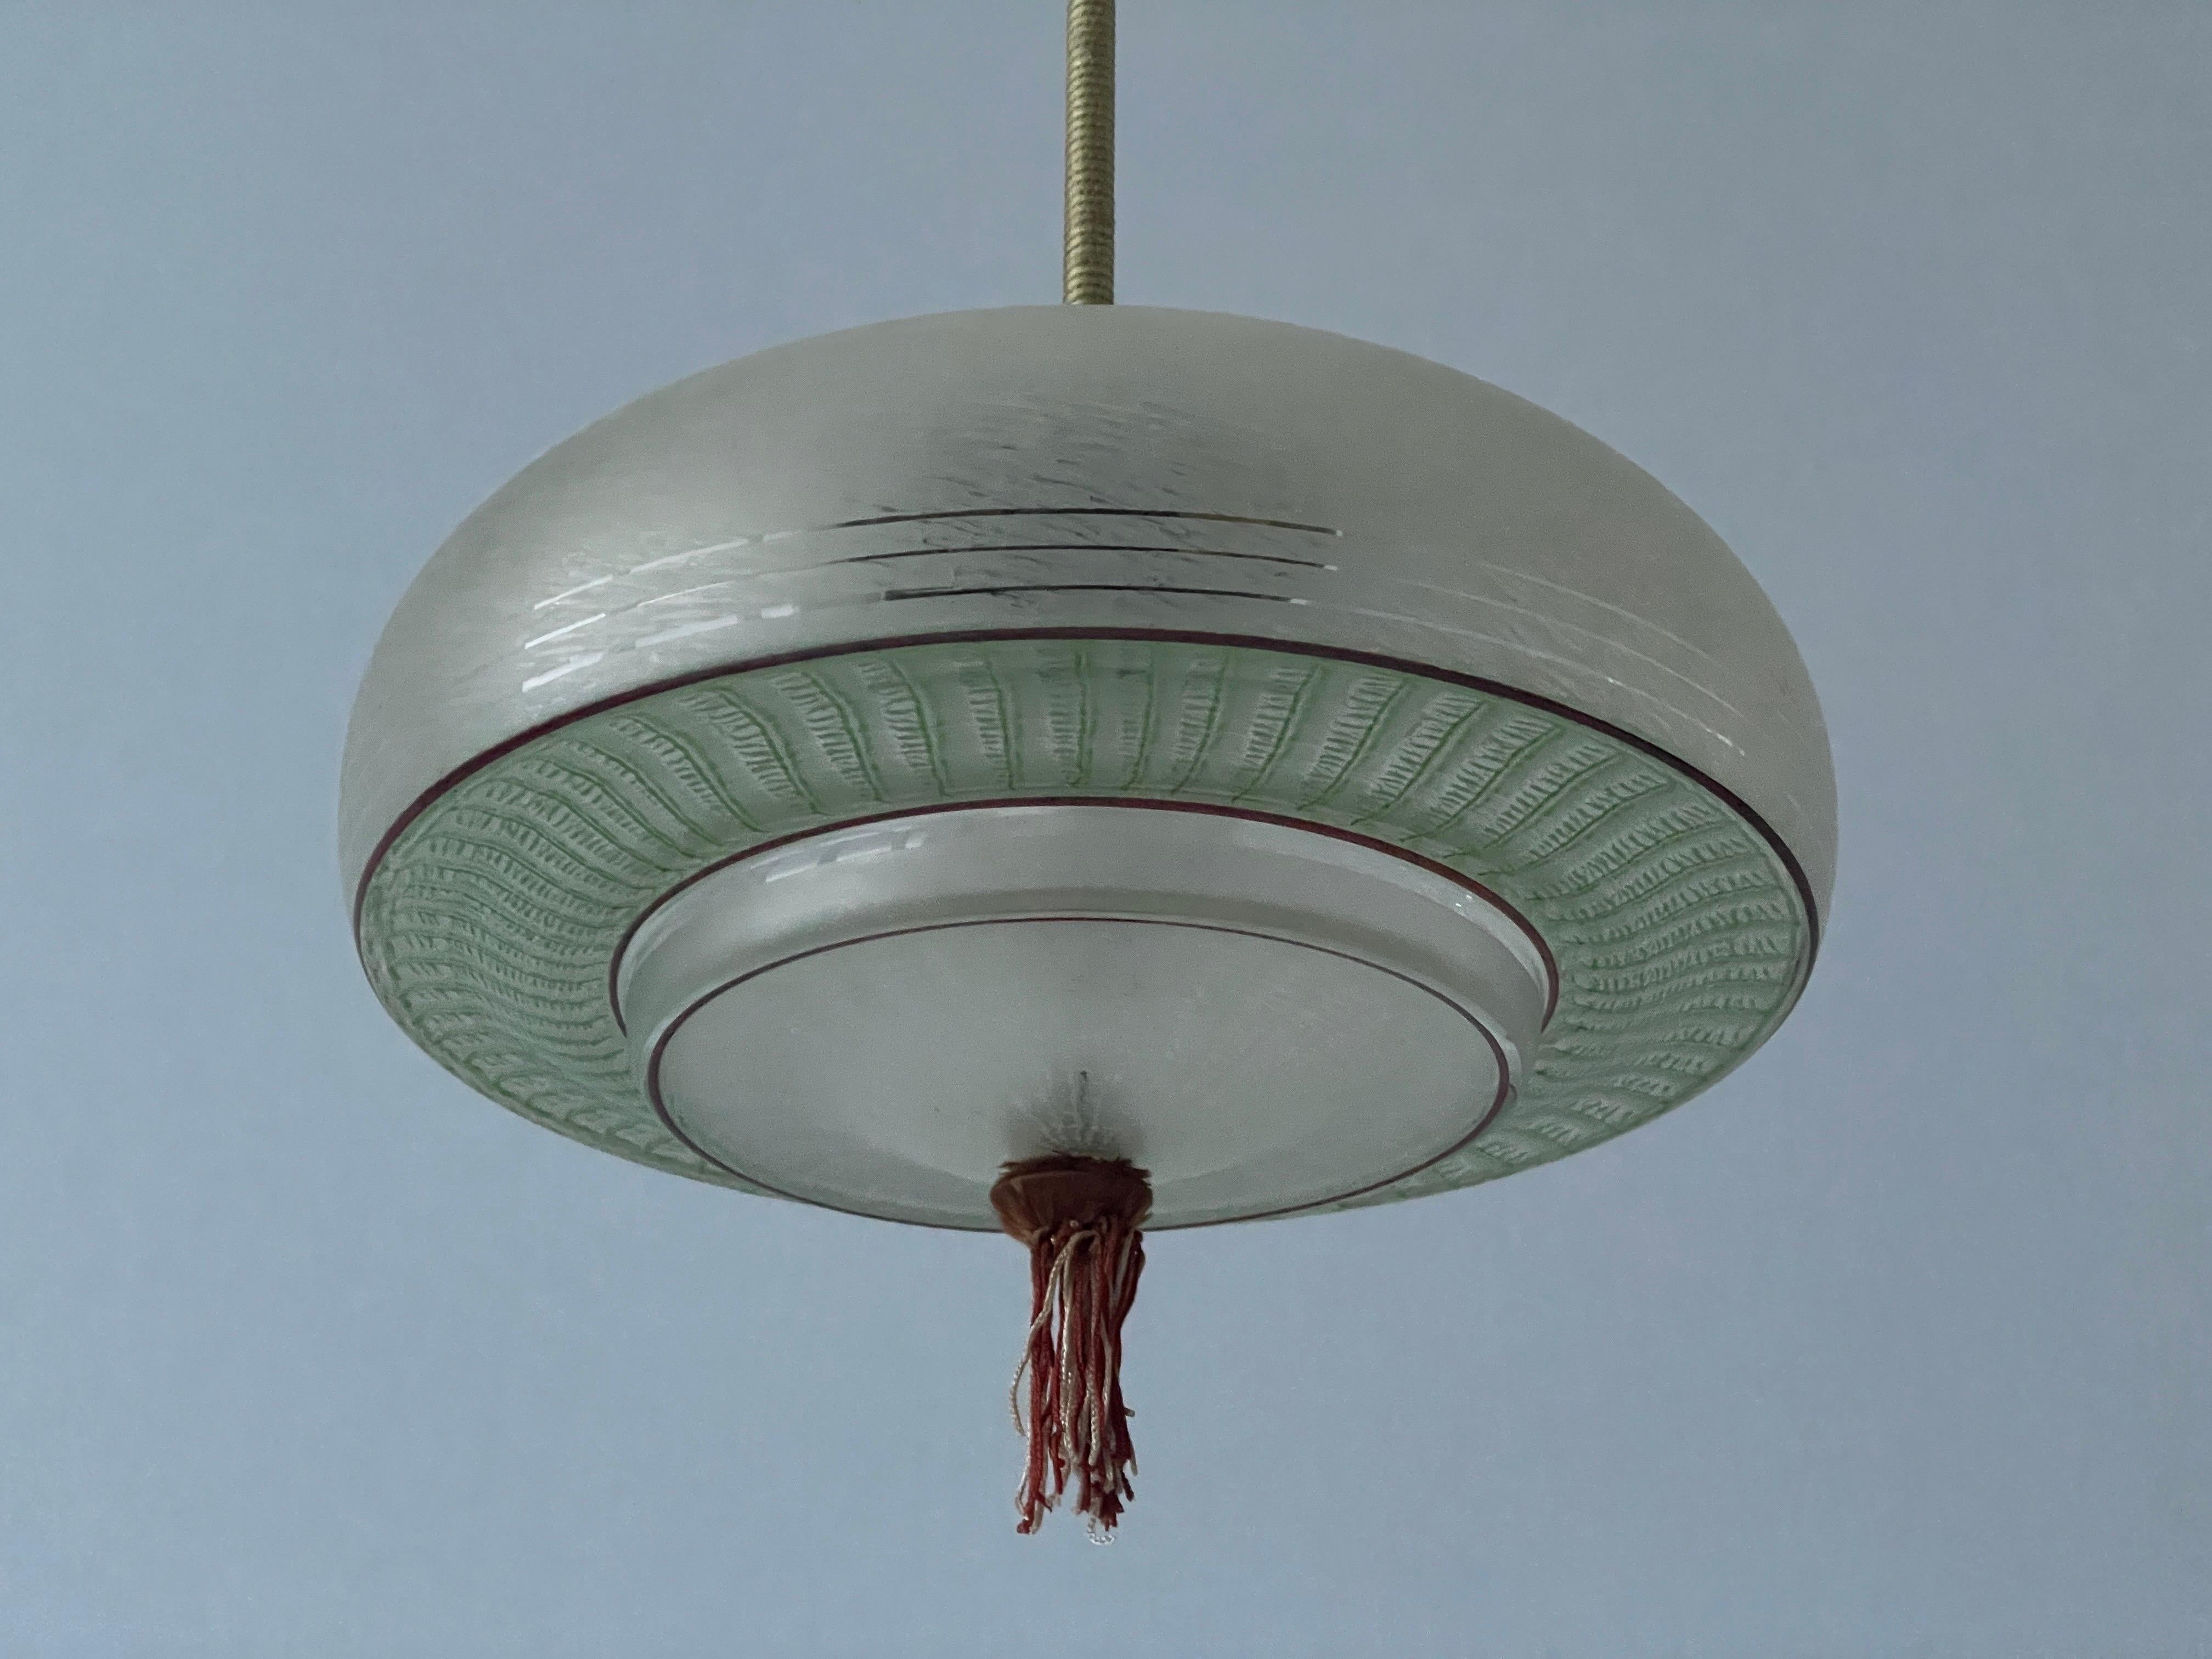 Grünglas-Deckenlampe im Art-Déco-Stil, 1960er Jahre, Deutschland

Diese Lampe funktioniert mit einer E27-Glühbirne.

Abmessungen: 
Höhe: 50 cm
Durchmesser und Höhe des Schirms: 30 cm und 16 cm
